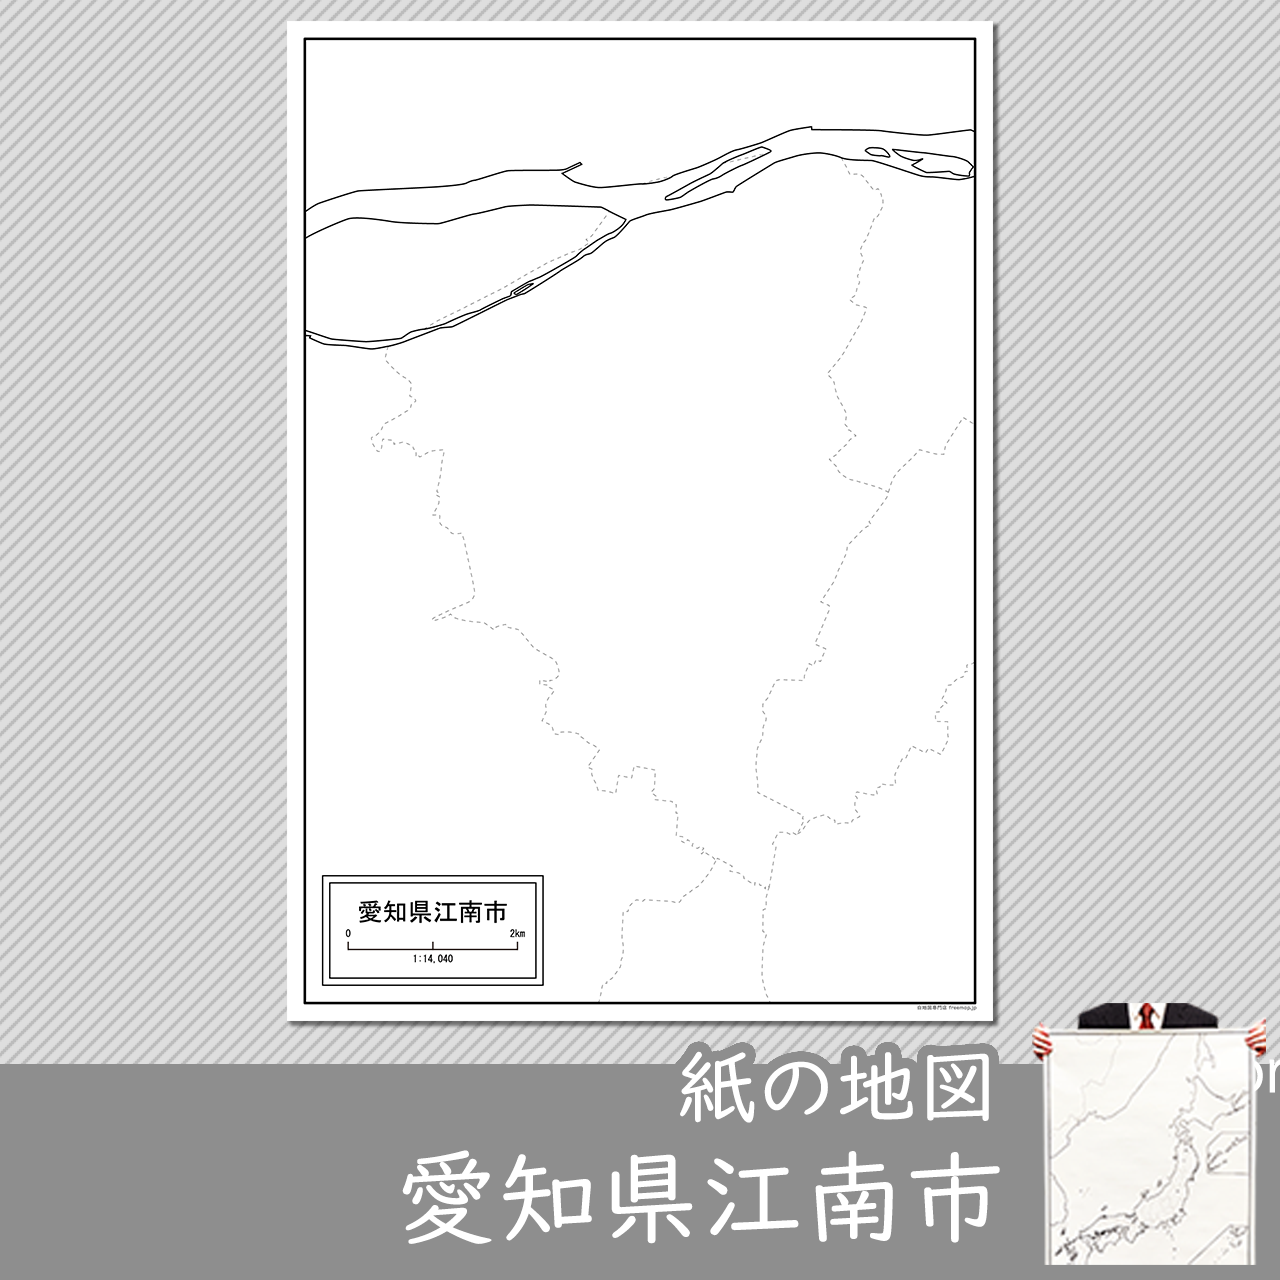 江南市の紙の白地図のサムネイル